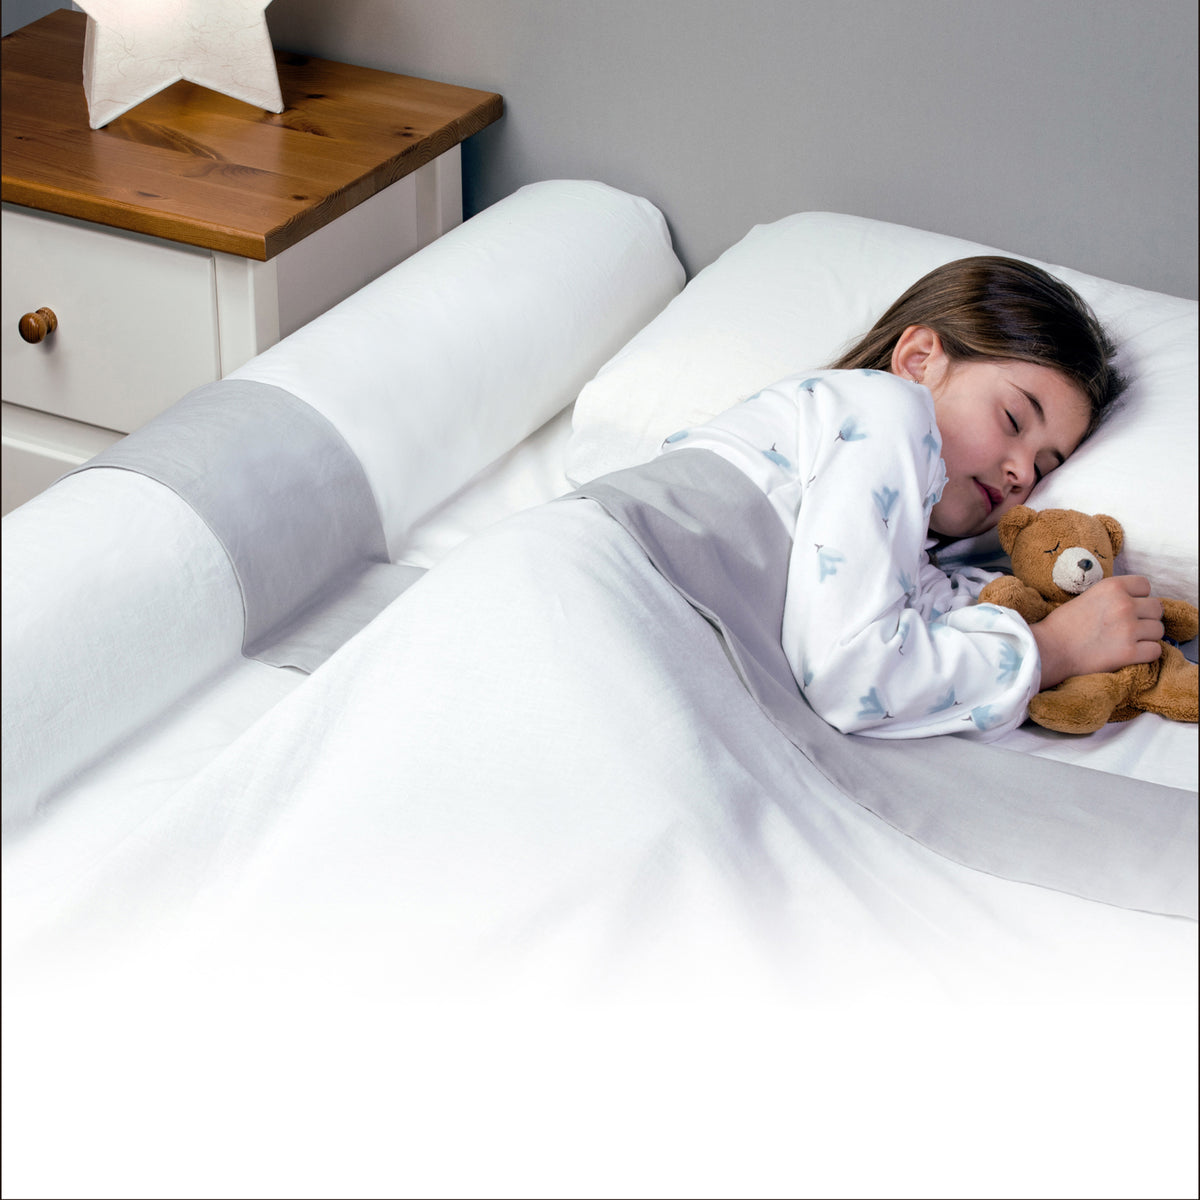 Barrera de cama infantil: ¿cómo debe ser?